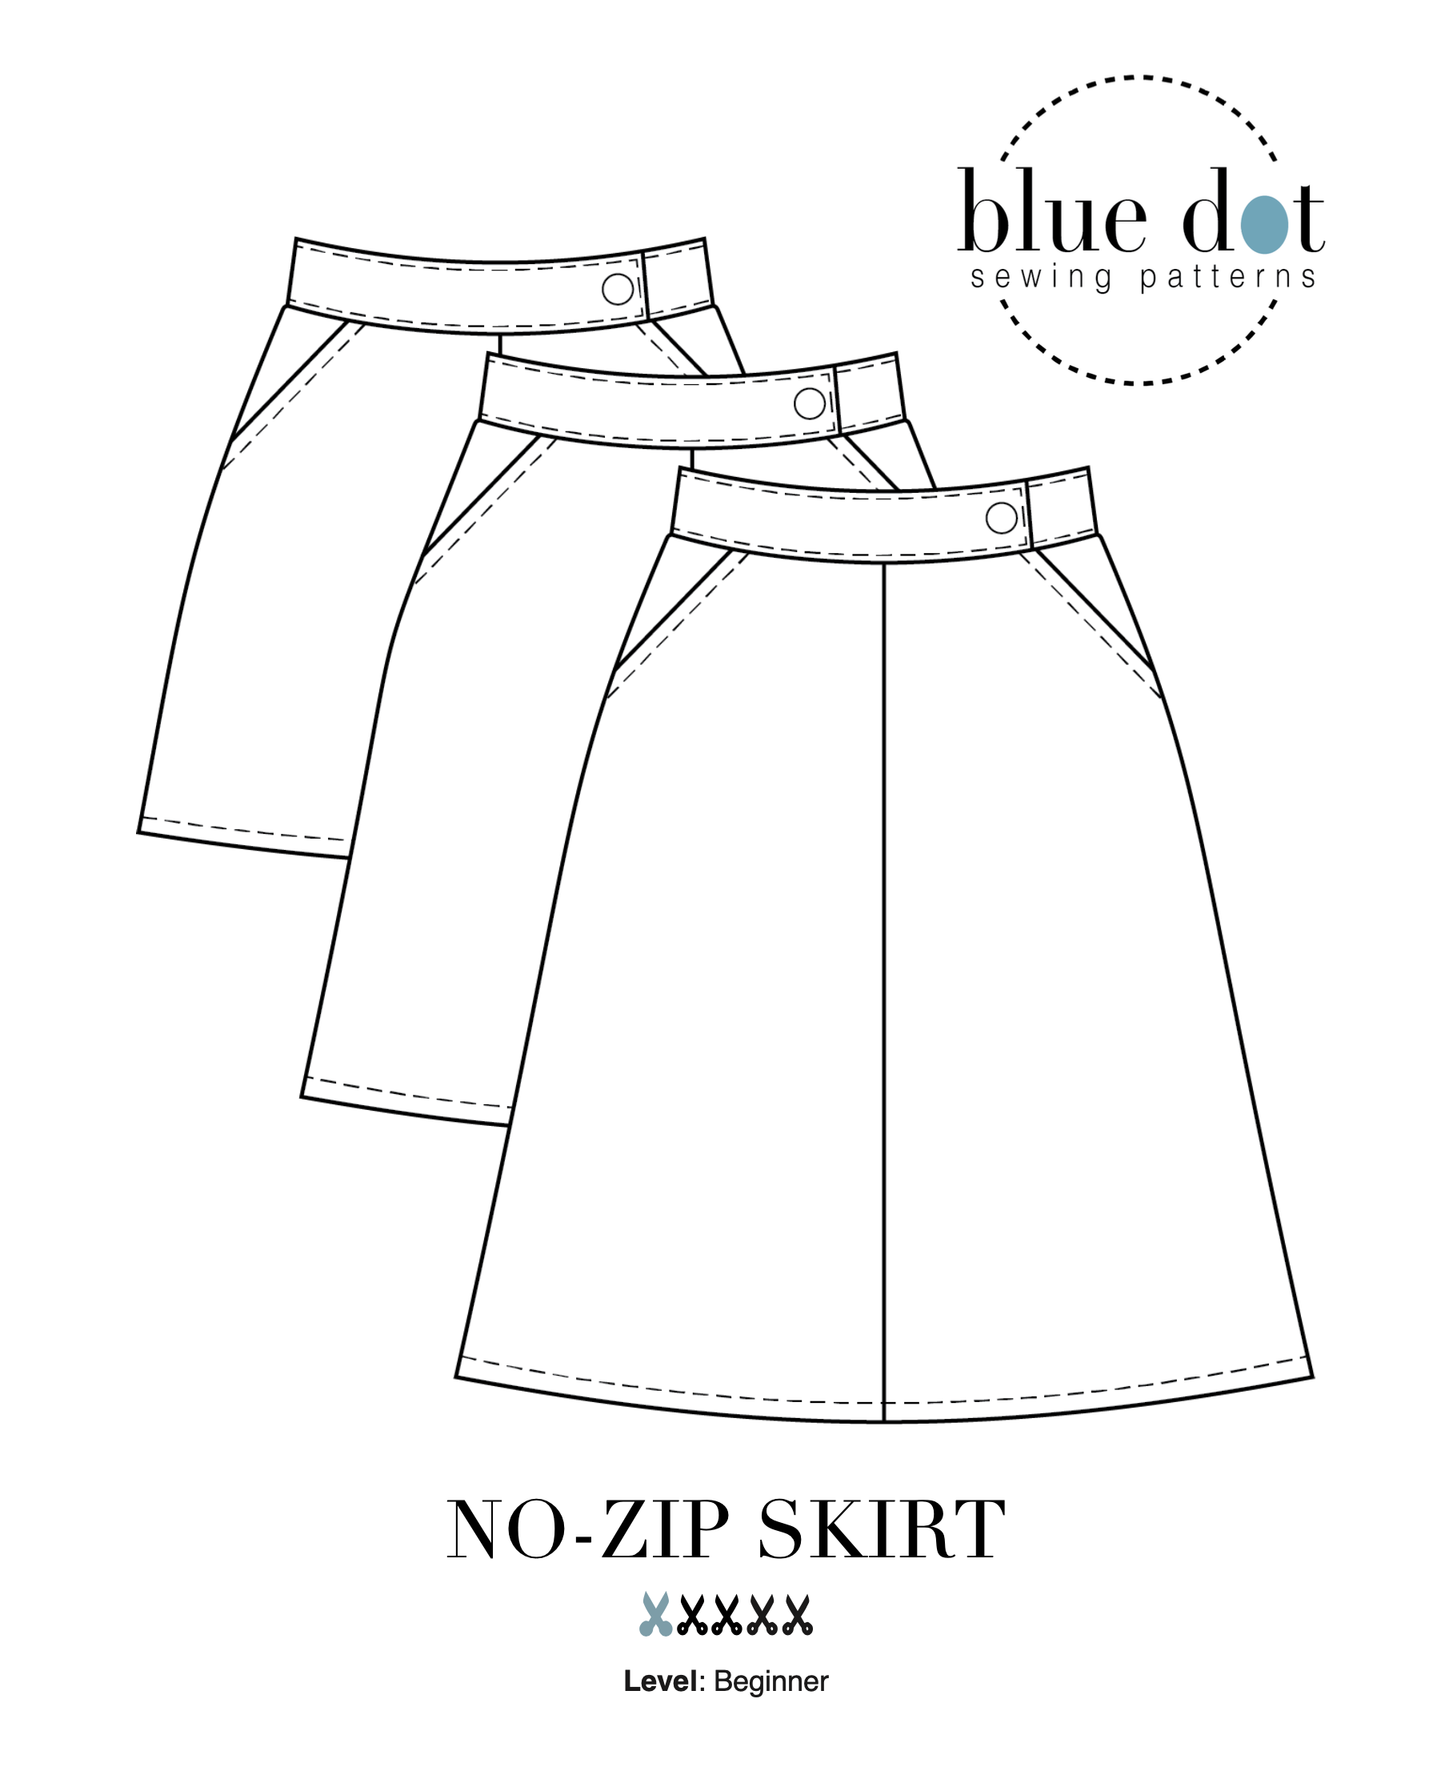 No-Zip Skirt